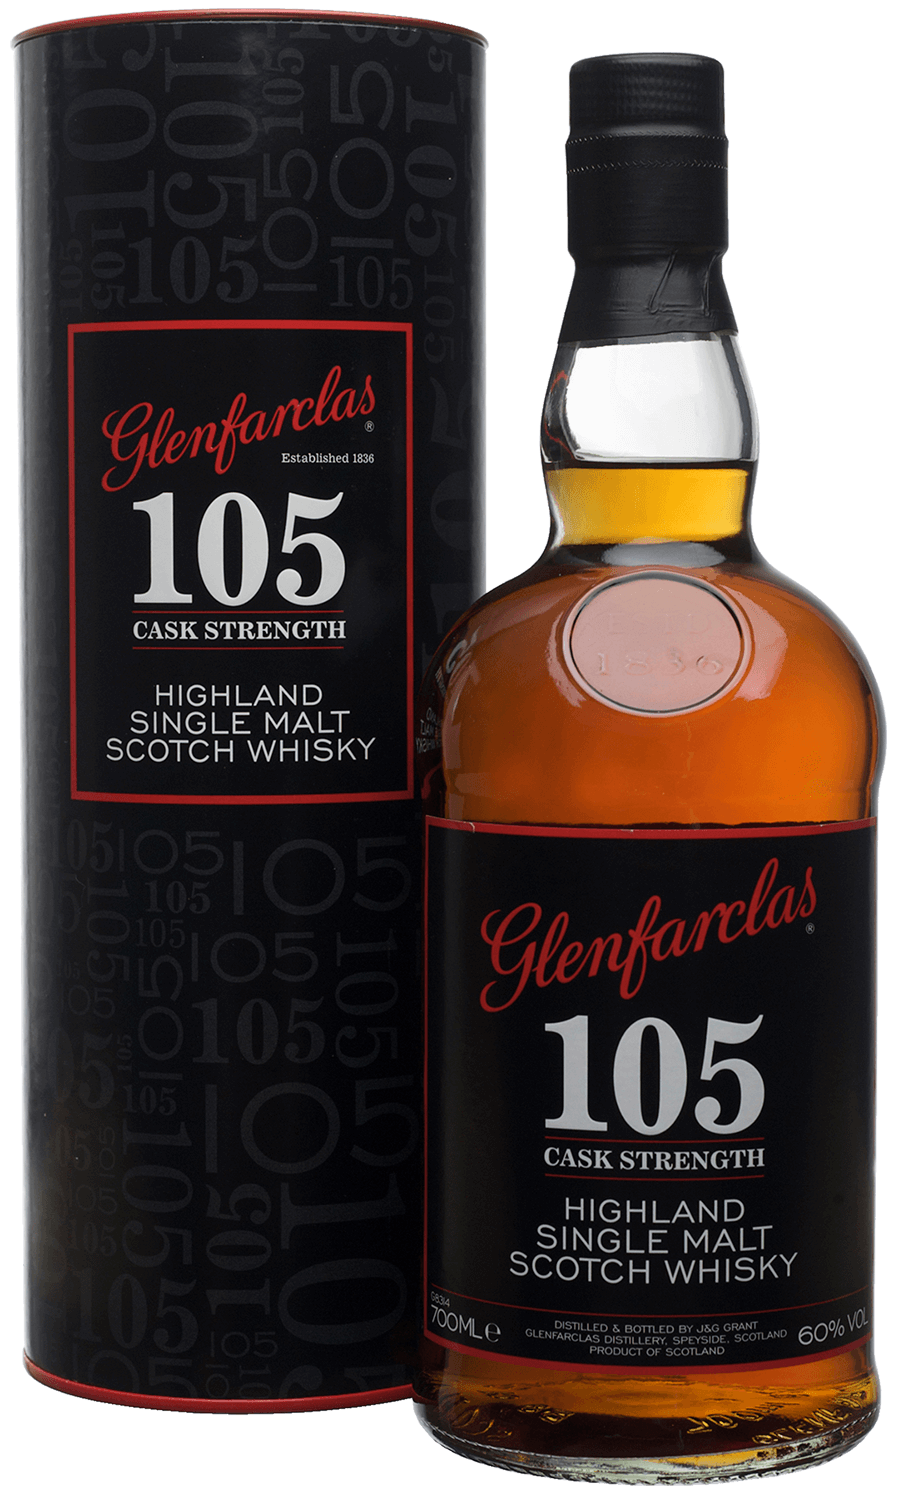 Glenfarclas 105 Single Malt Scotch Whisky (gift box) glenfarclas 105 single malt scotch whisky gift box